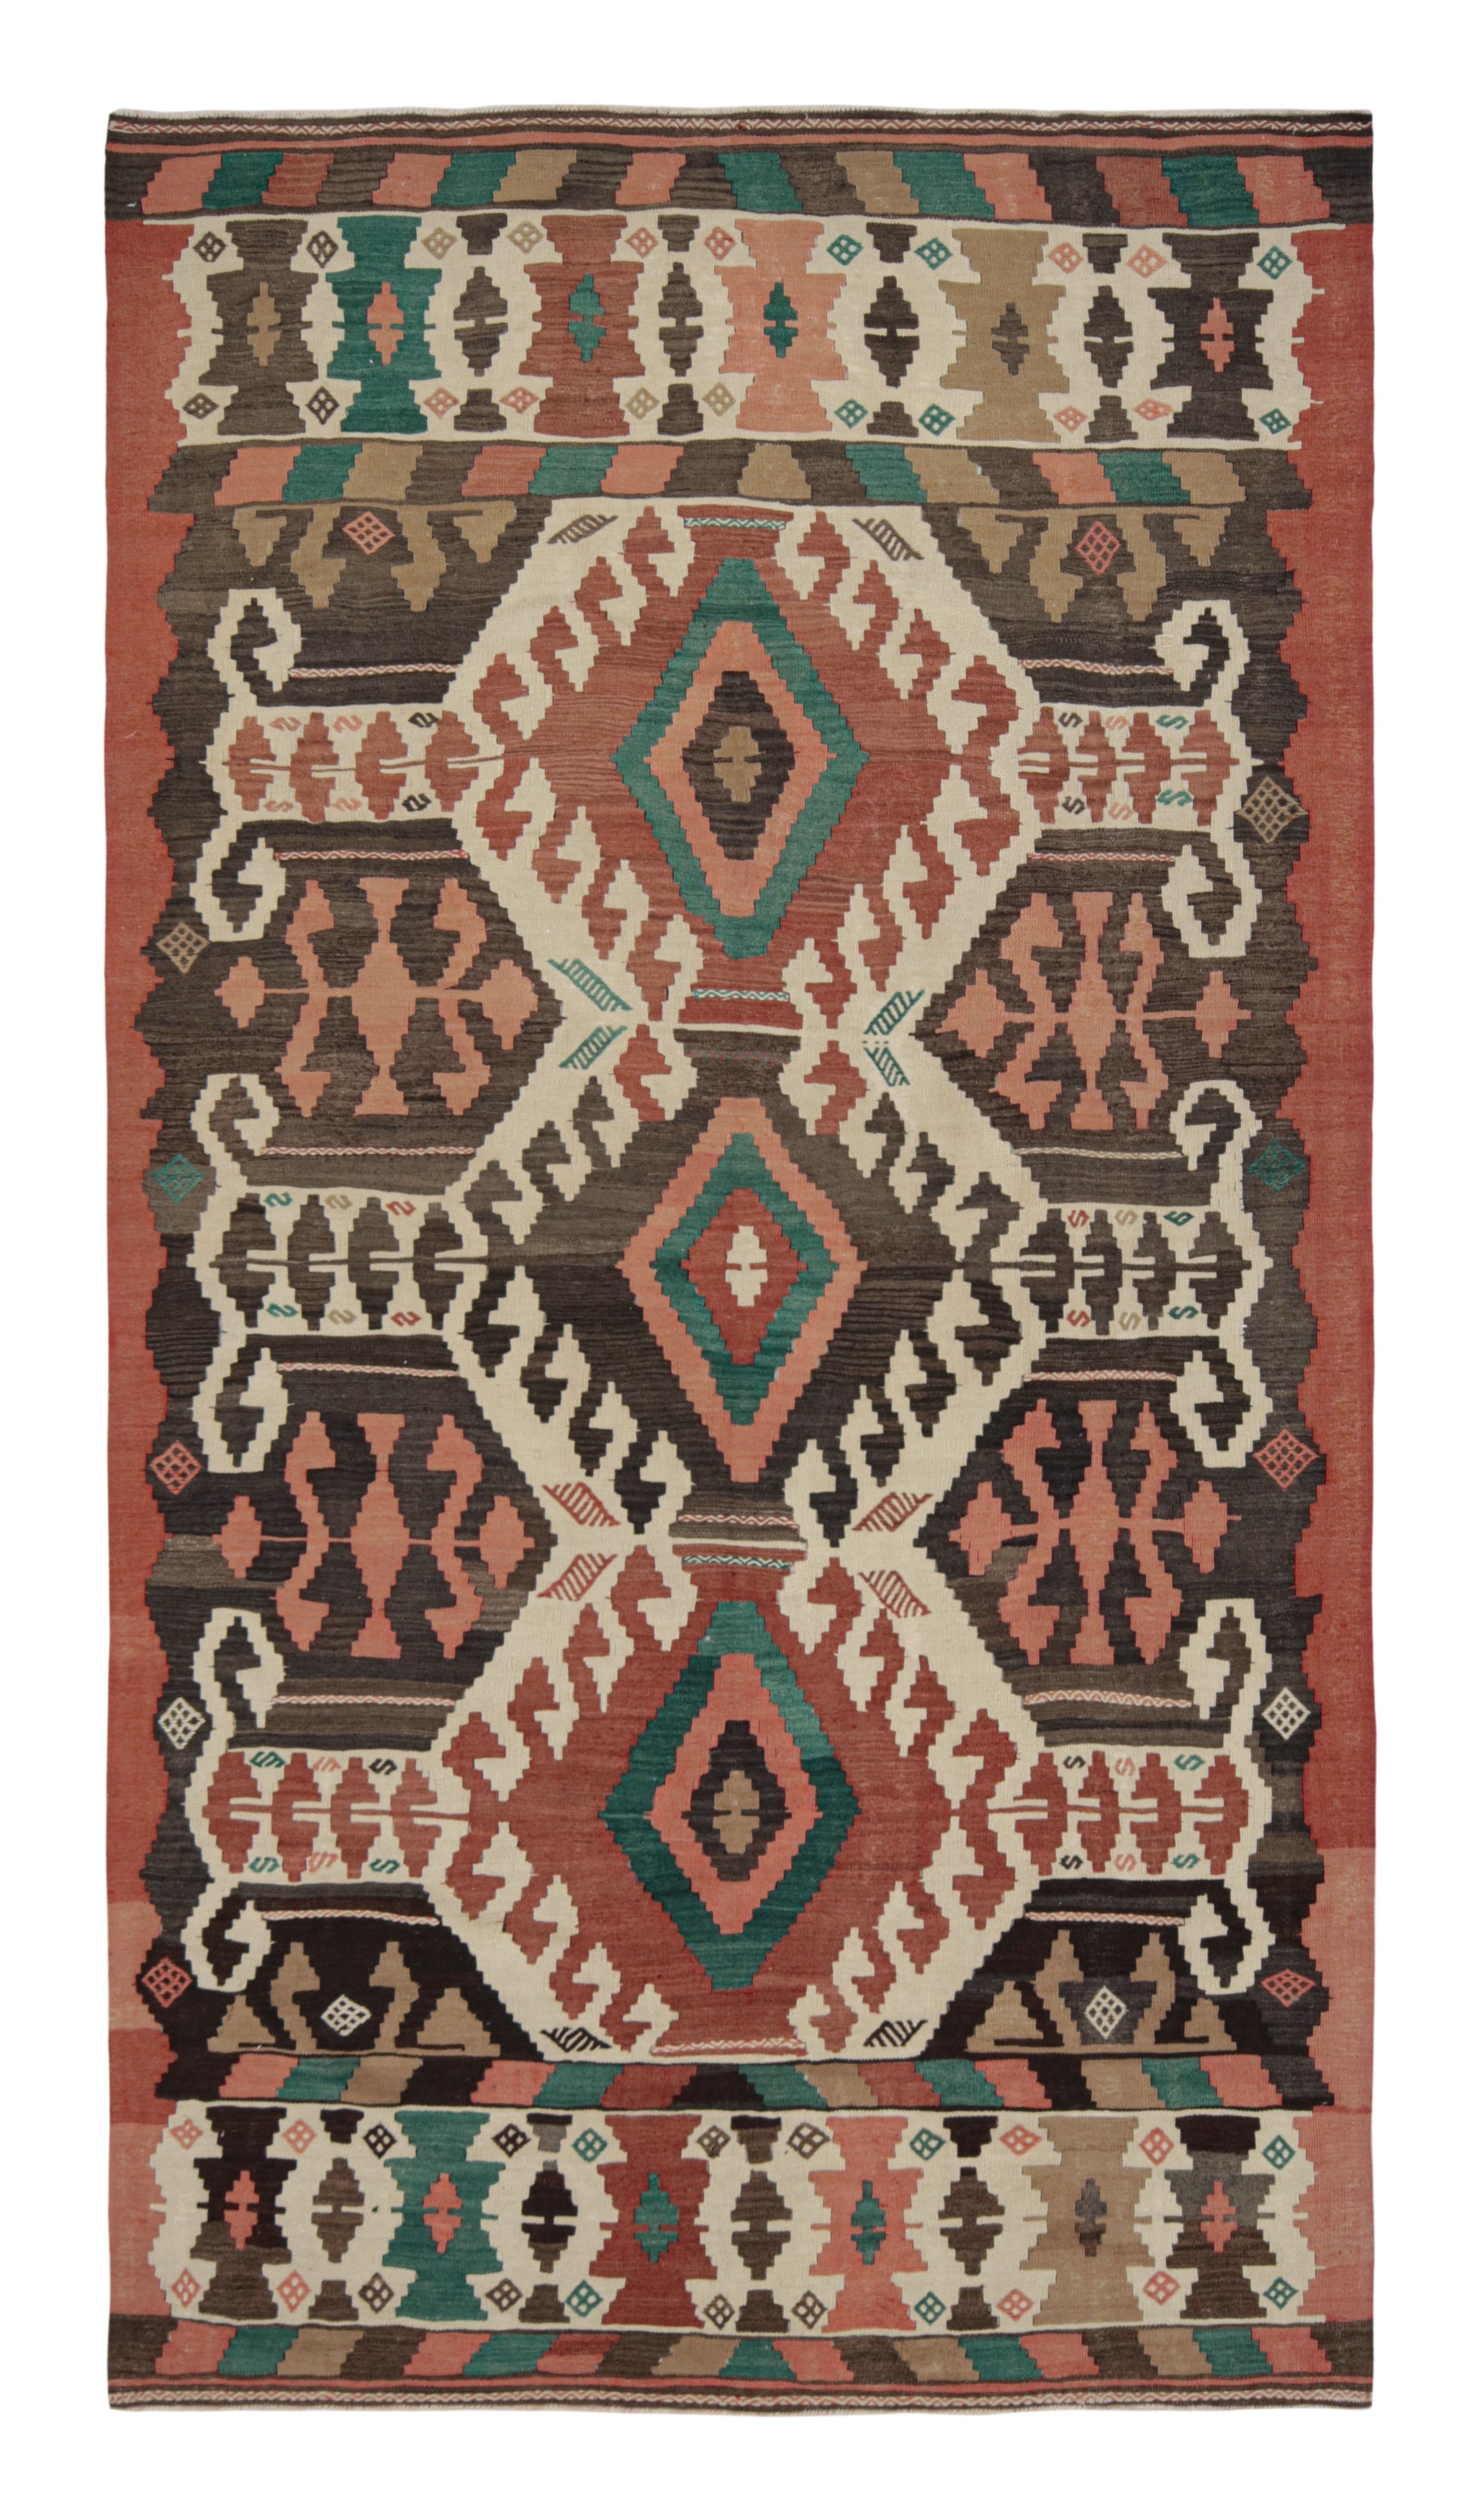 Midcentury Vintage Kilim Rug in Beige Tribal Geometric Pattern by Rug & Kilim